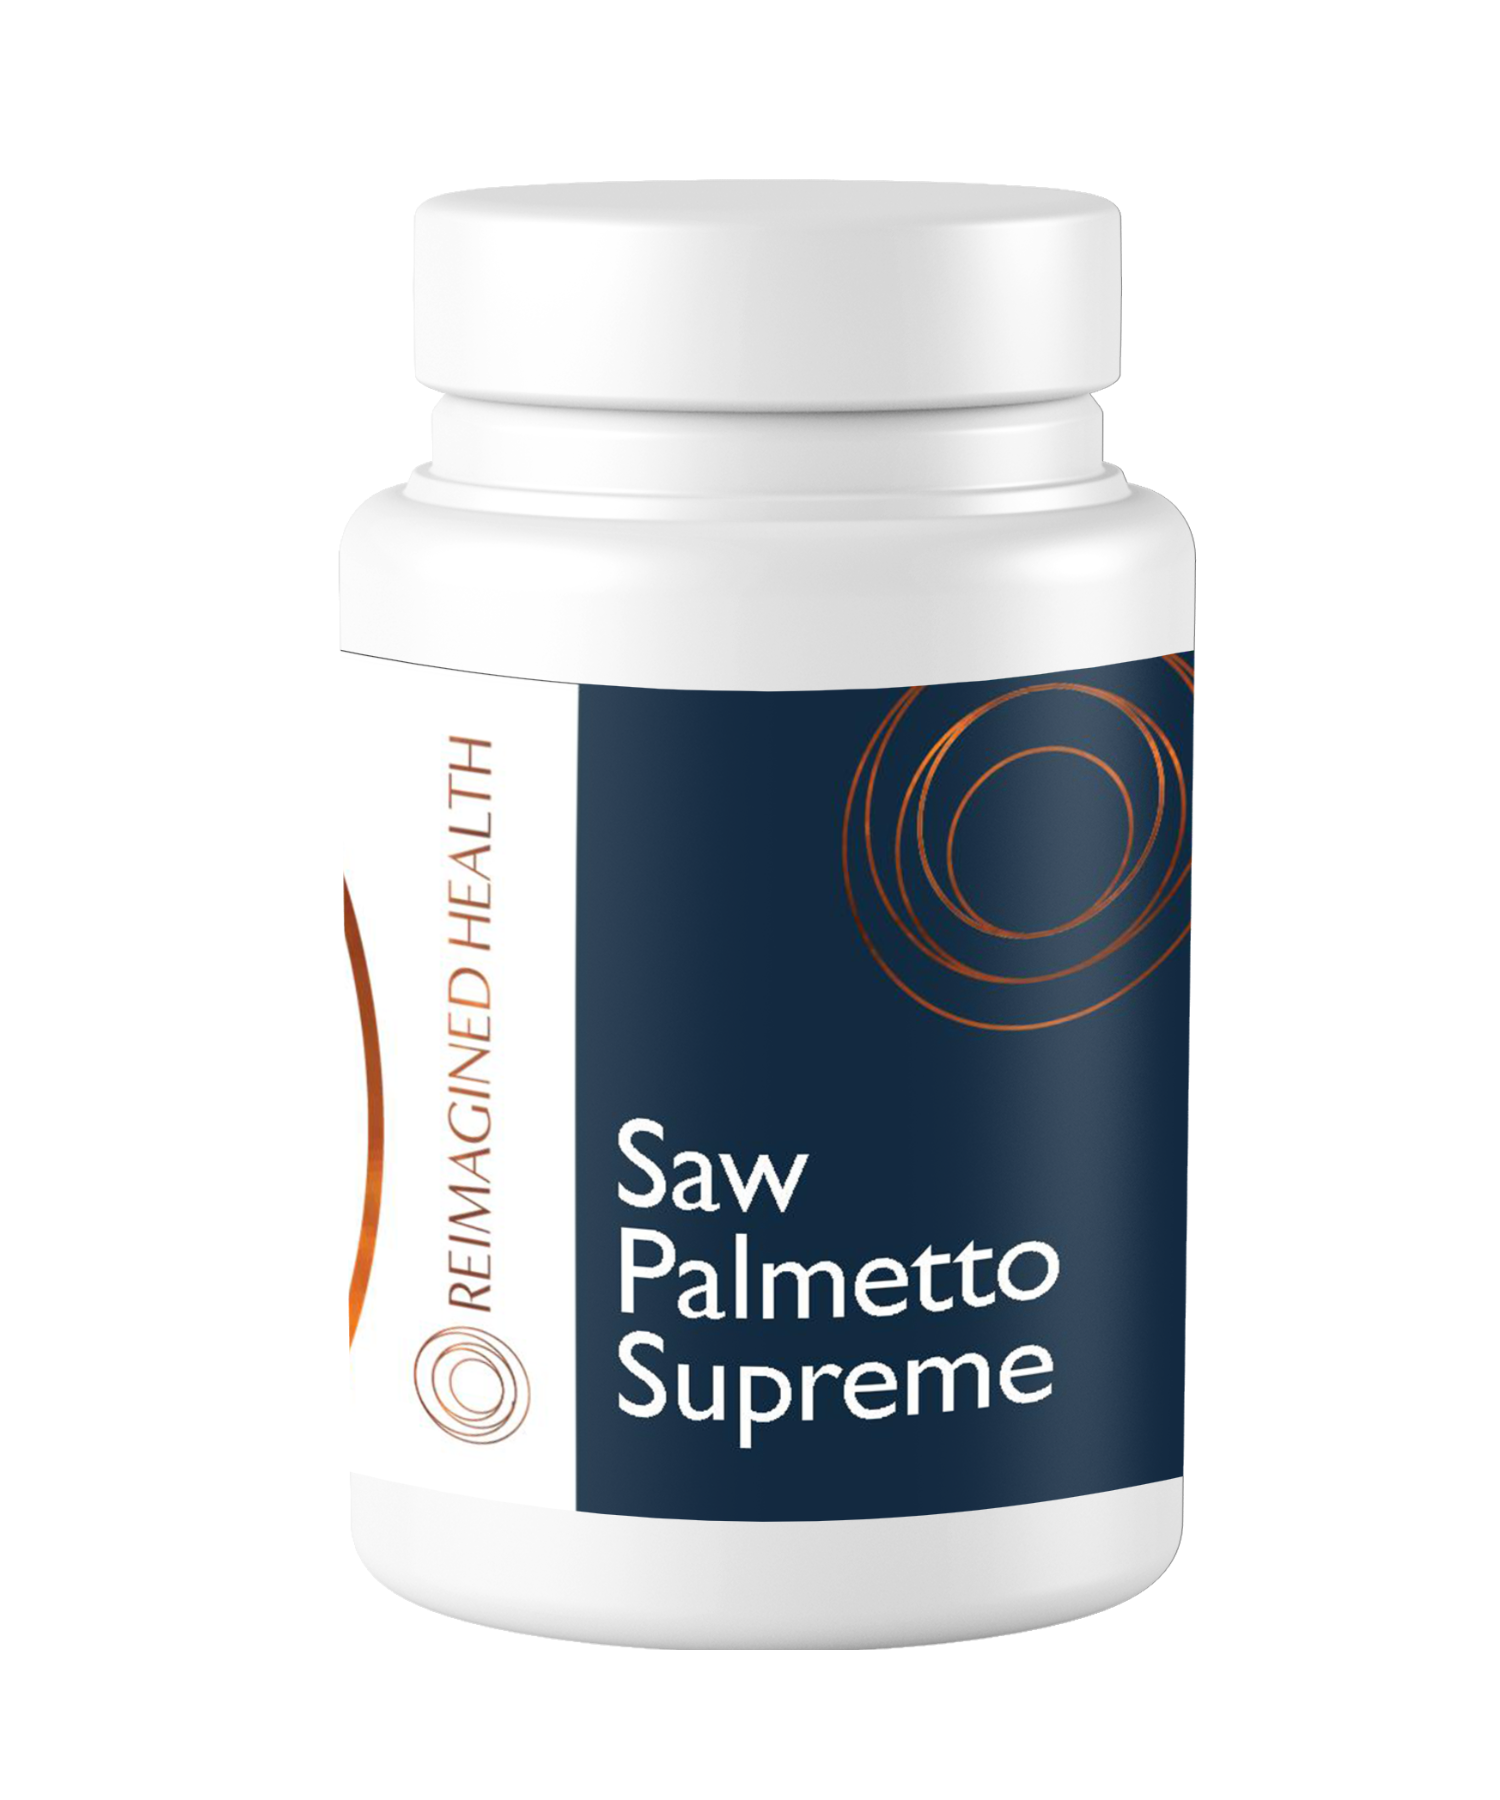 Saw-Palmetto-Supreme-C726-1.png